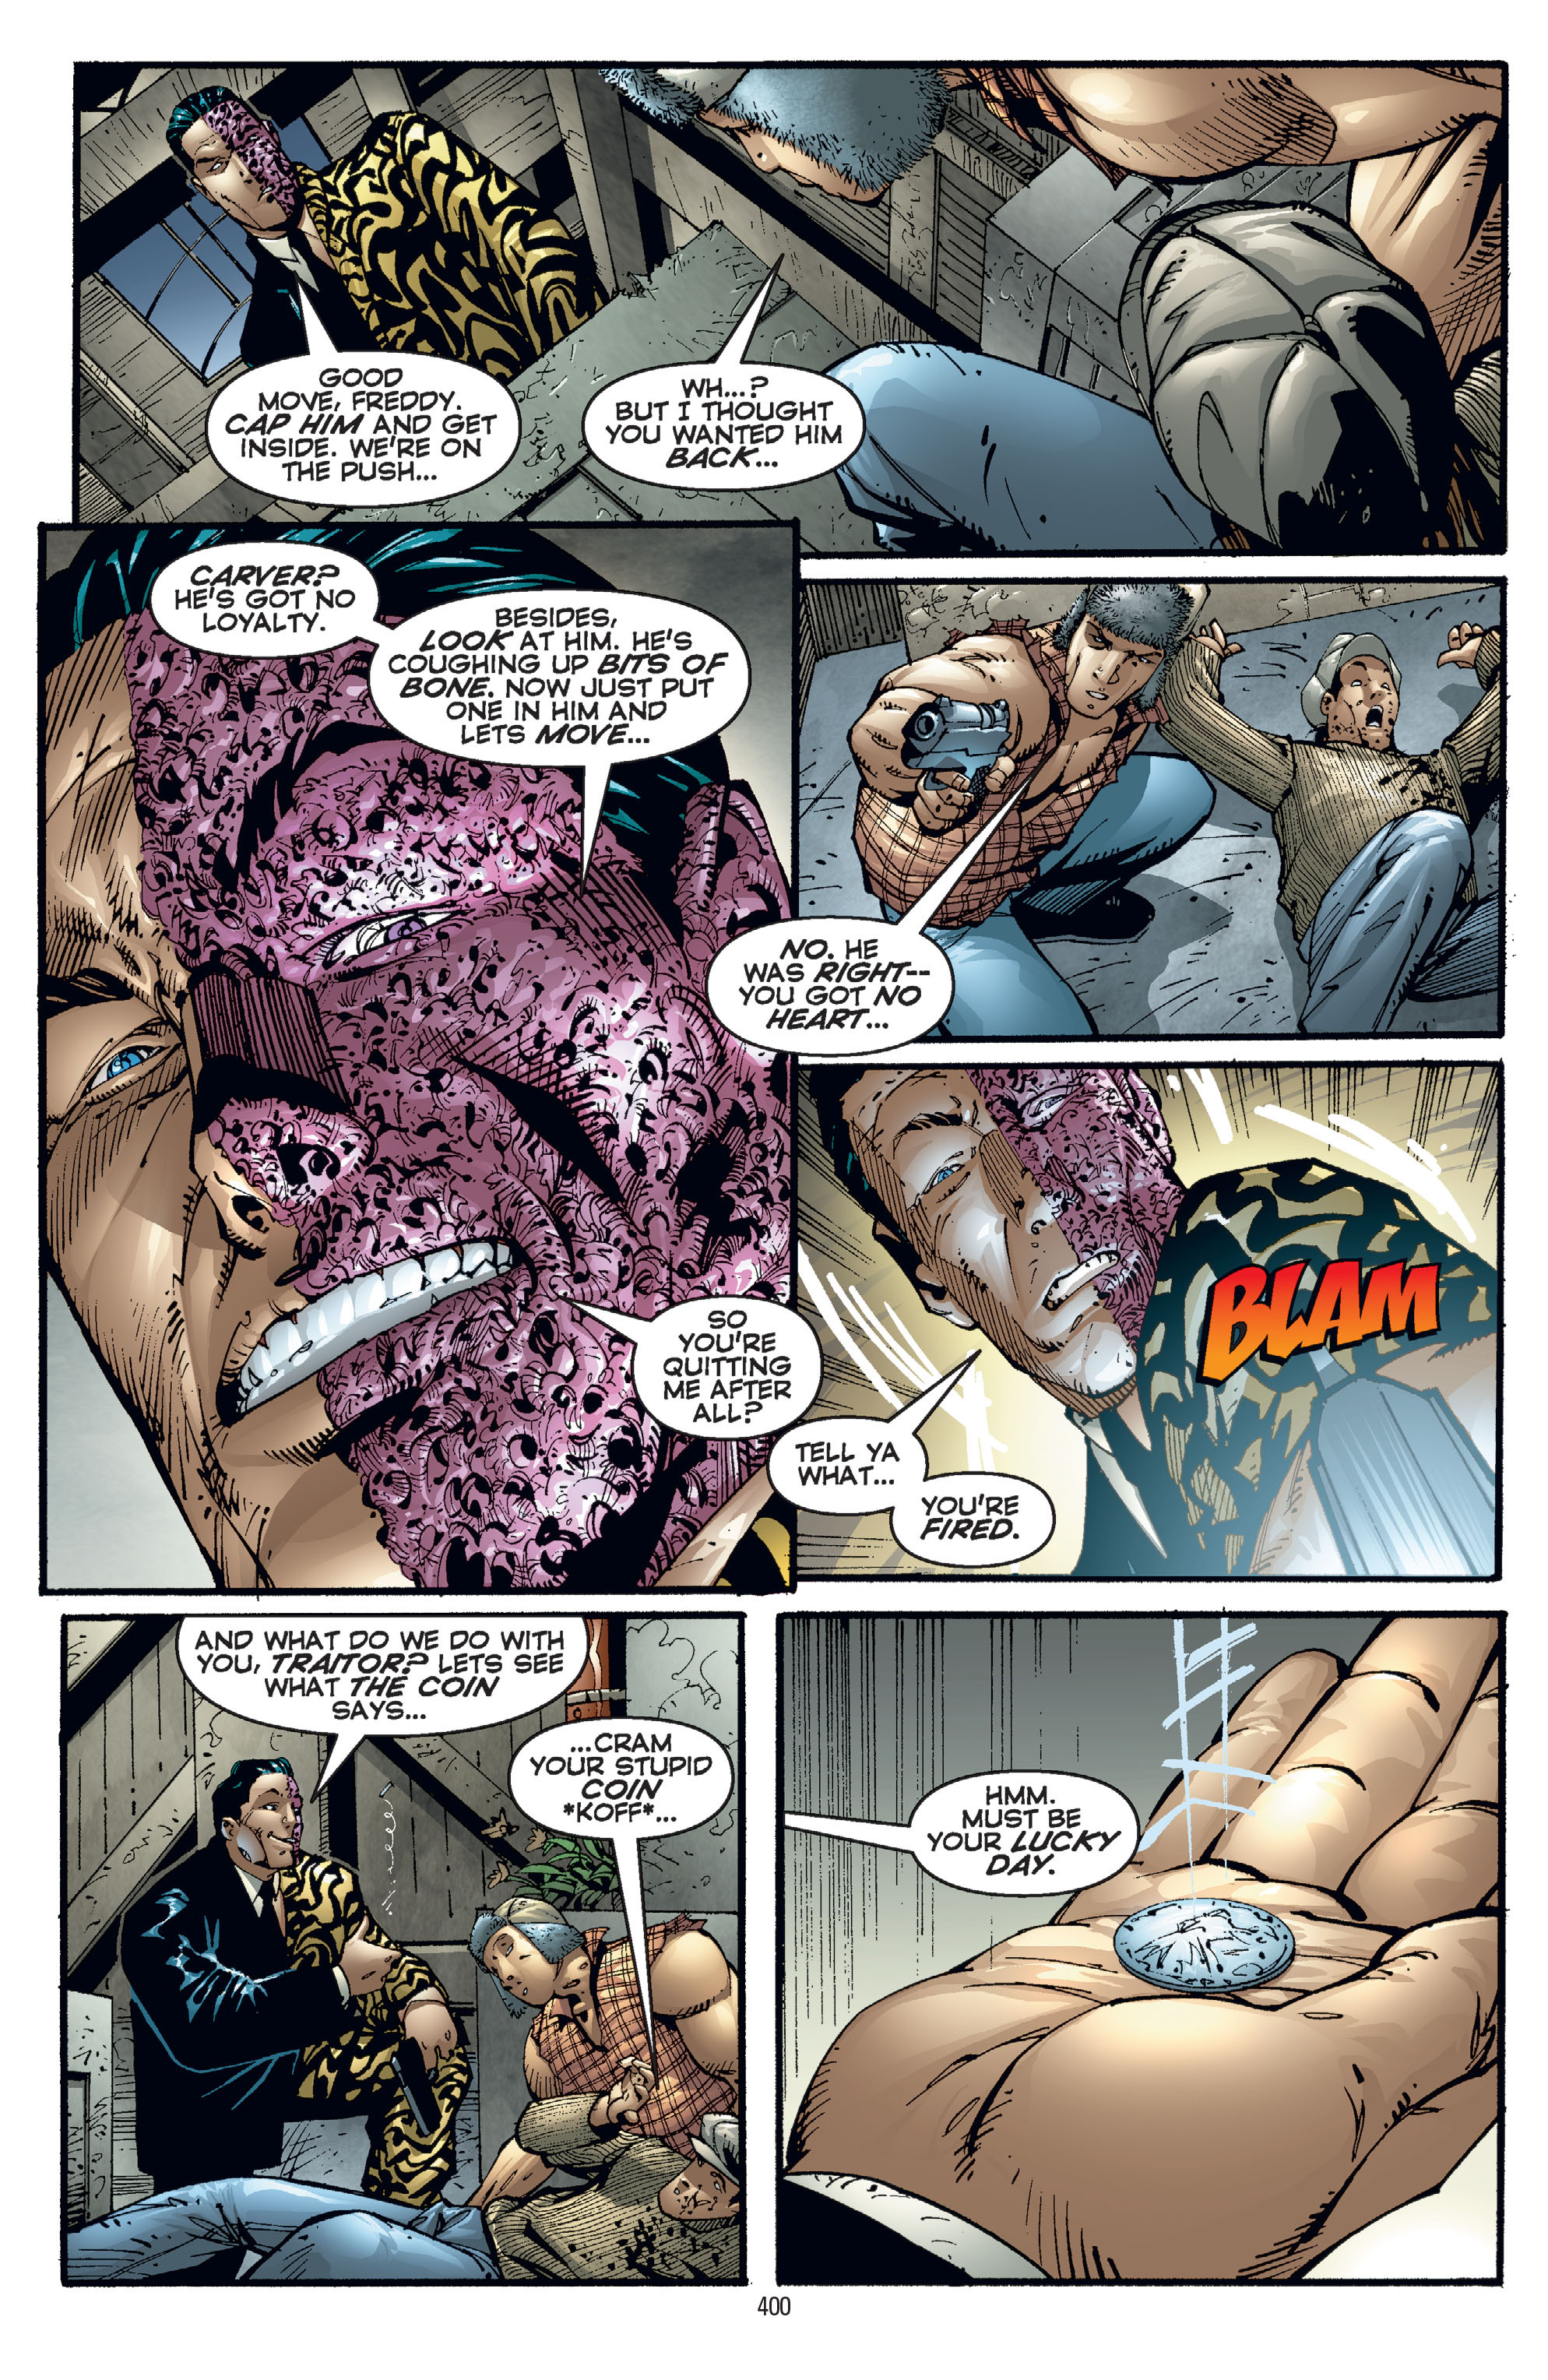 DC Comics/Dark Horse Comics: Justice League Full #1 - English 390